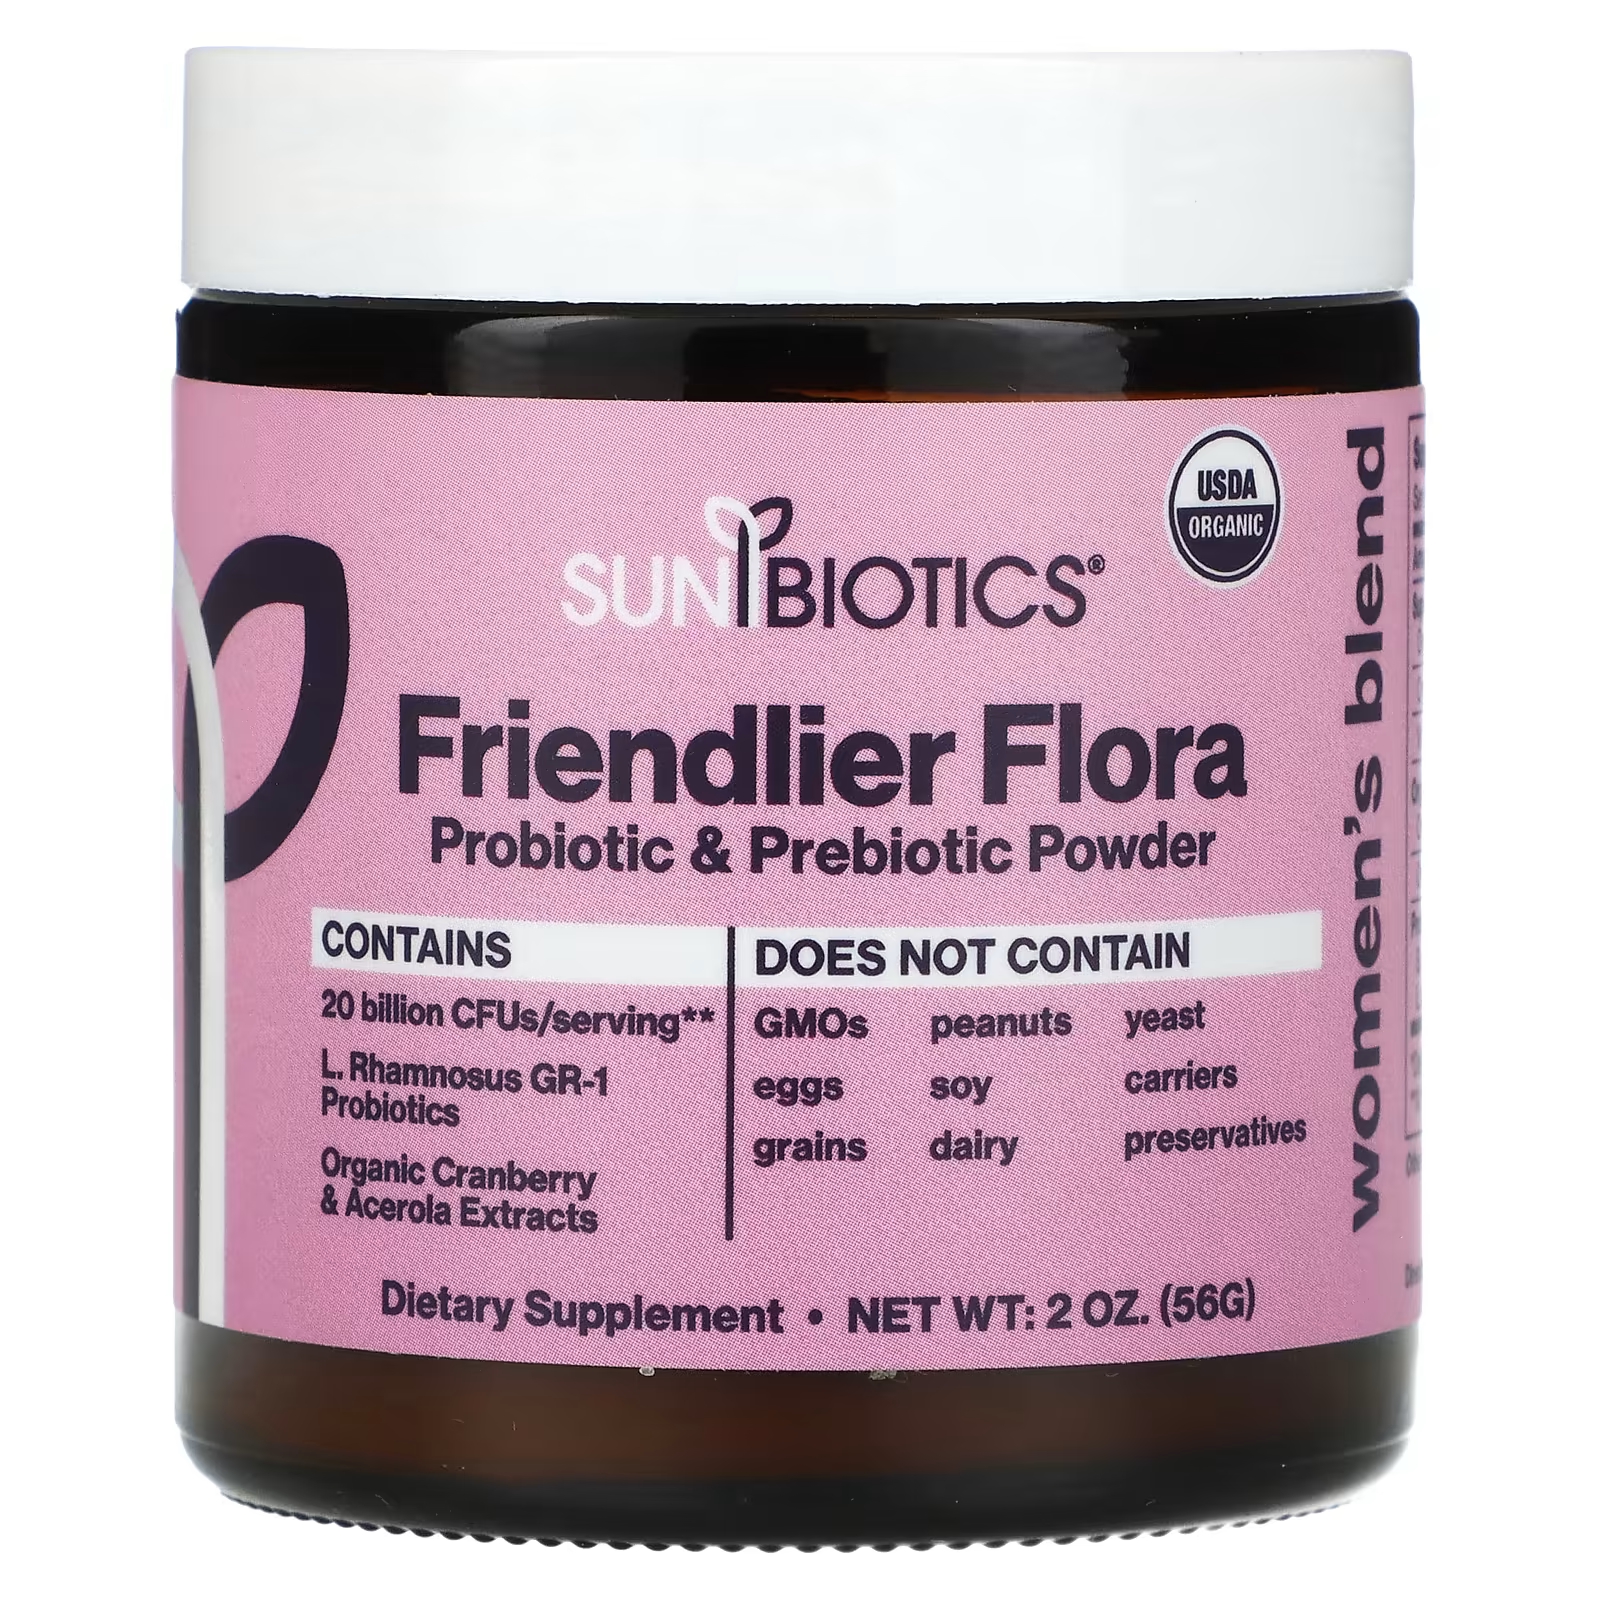 Пищевая добавка Sunbiotics Friendlier Flora женская смесь пробиотик и пребиотик в порошке, 56г фото